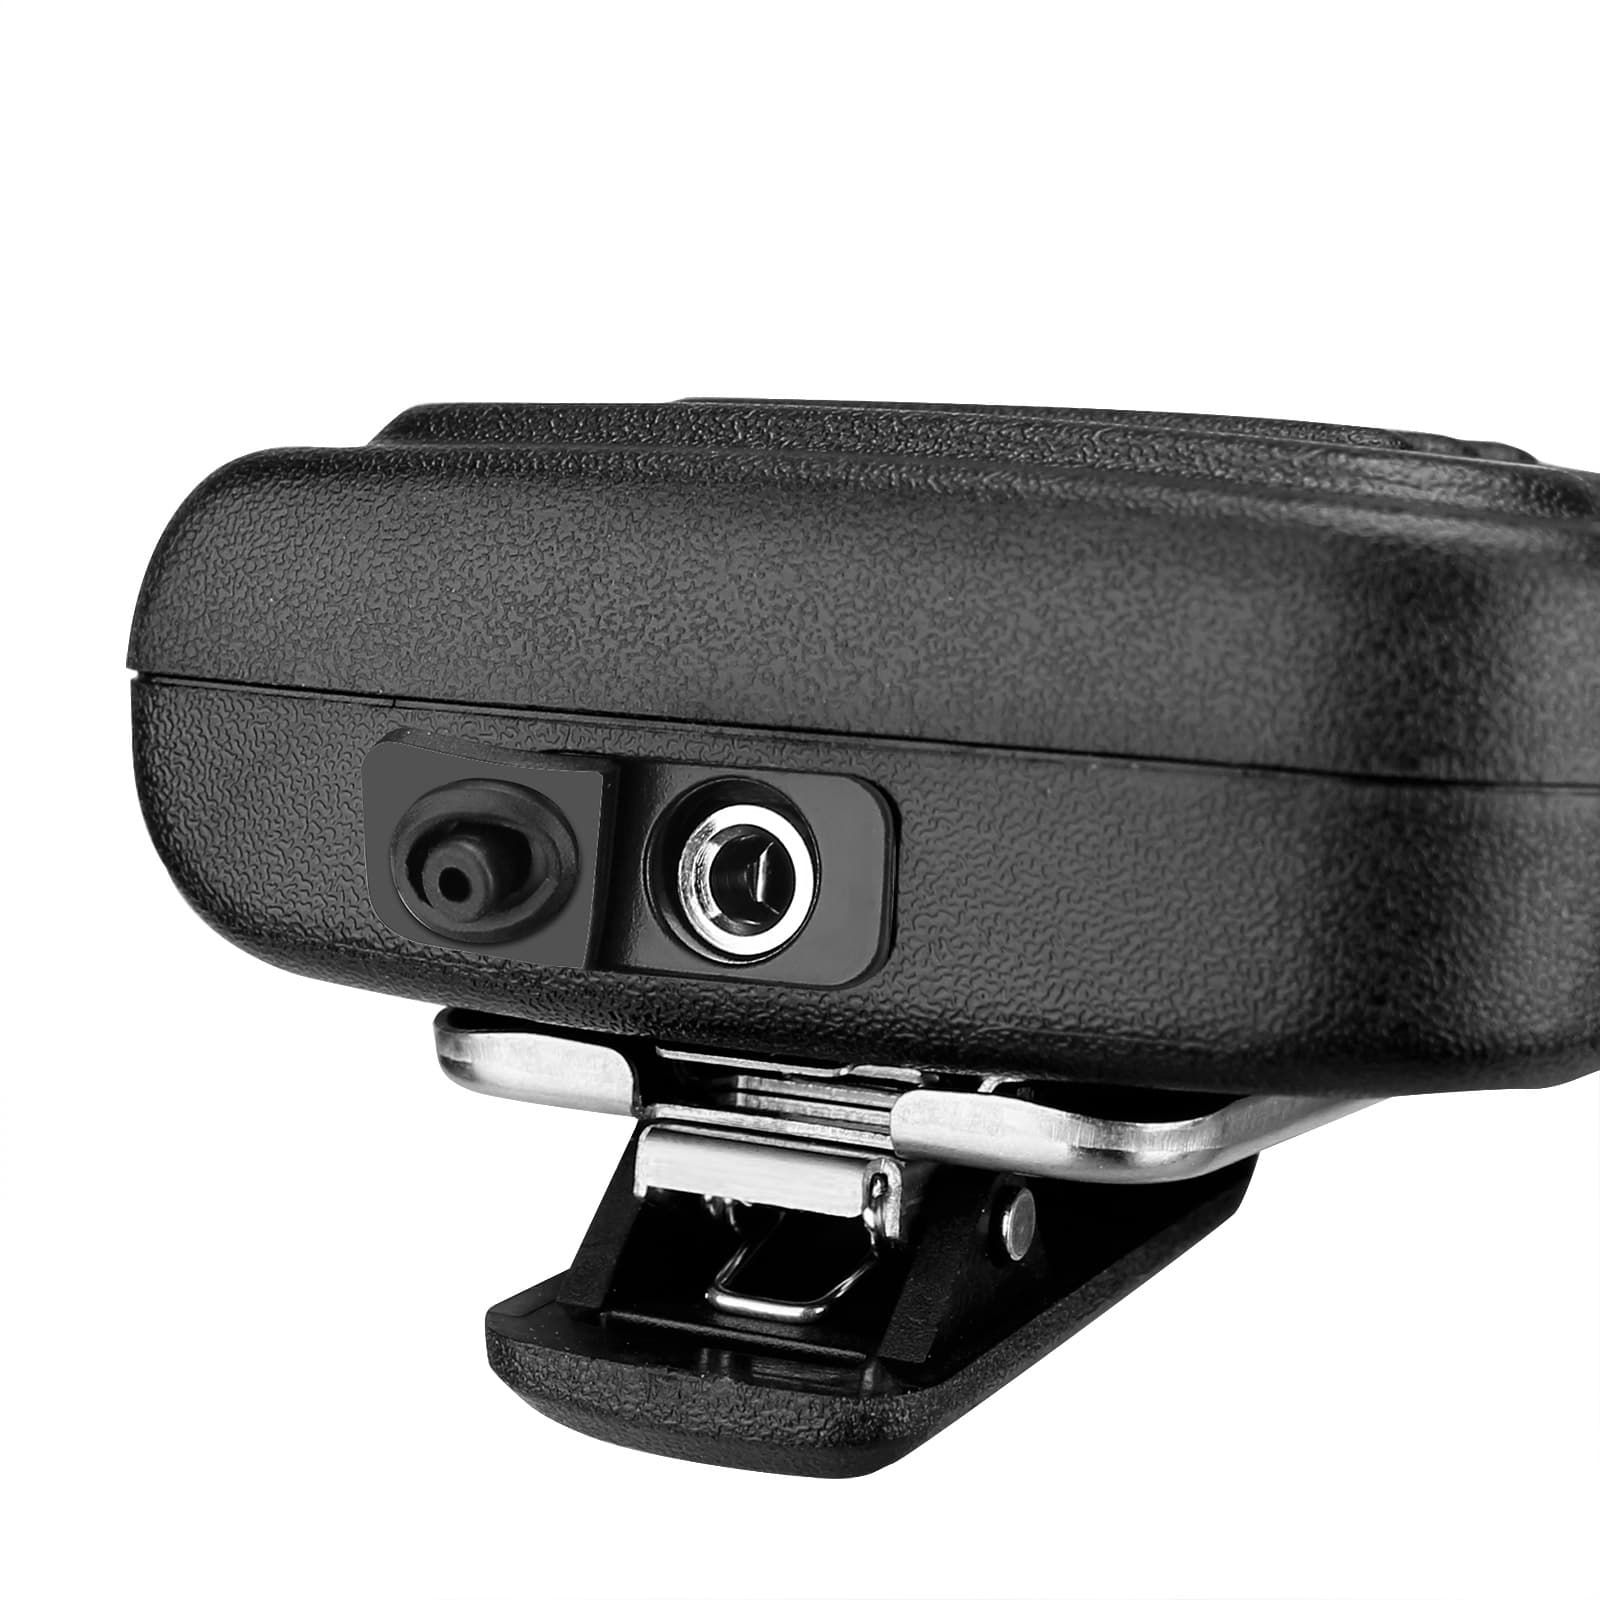 Retevis H103K Waterproof Speaker Mic with 3.5mm Audio Jack